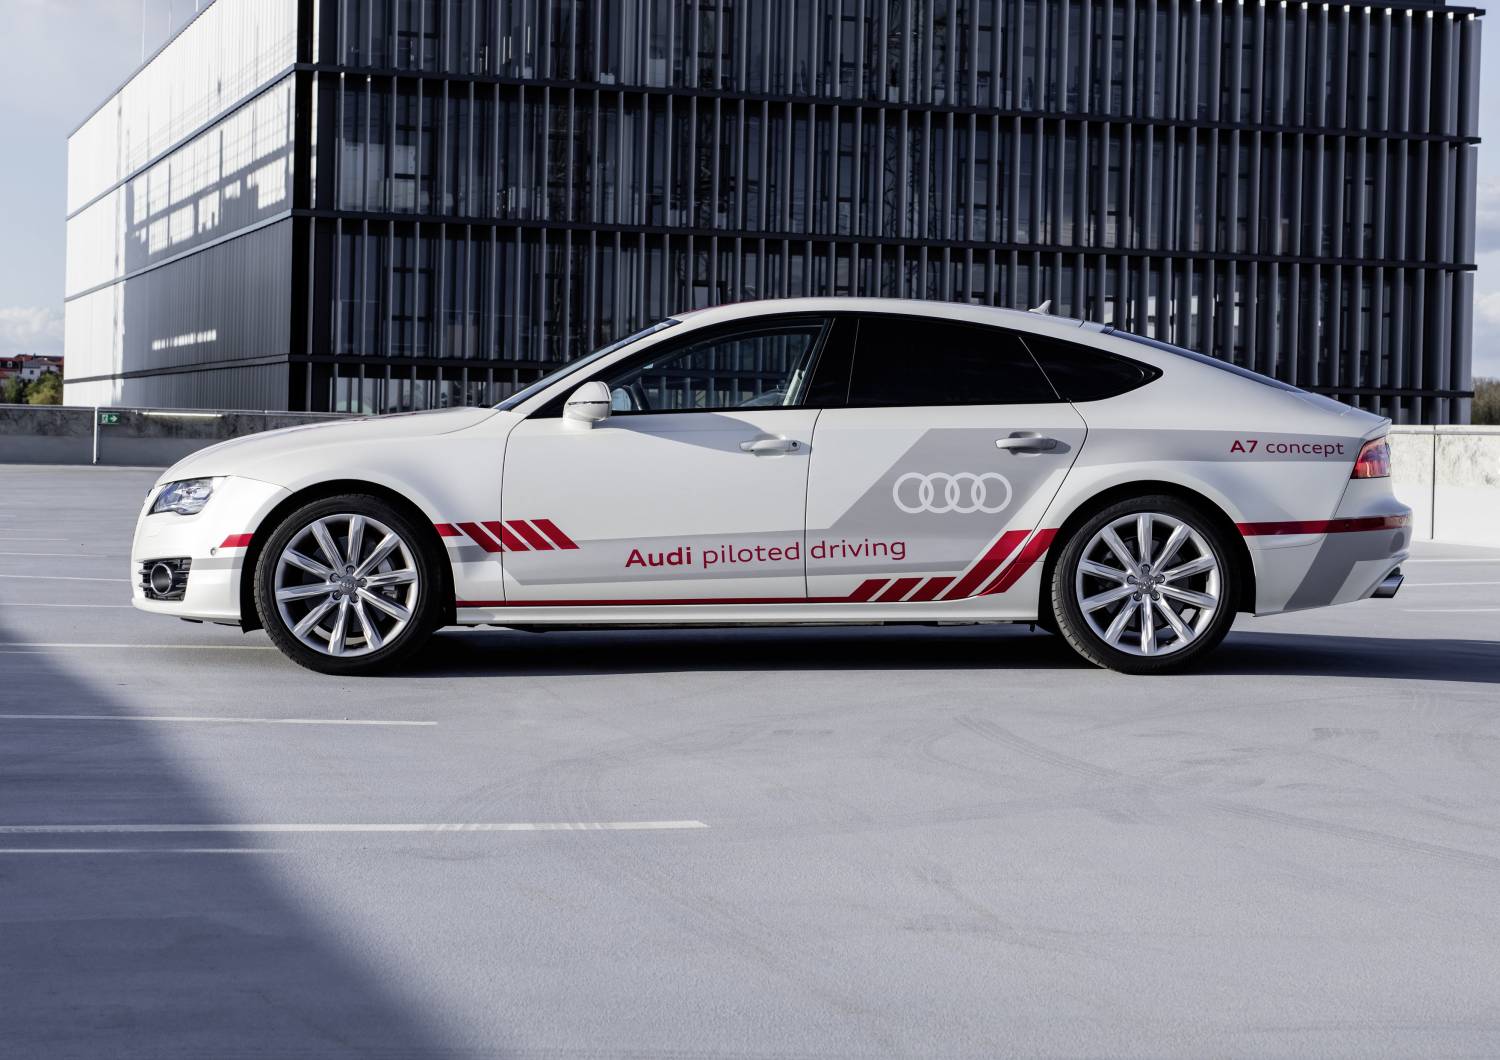 Фотография к новости Тестовая эксплуатация Audi с автопилотом начнется в 2018 году